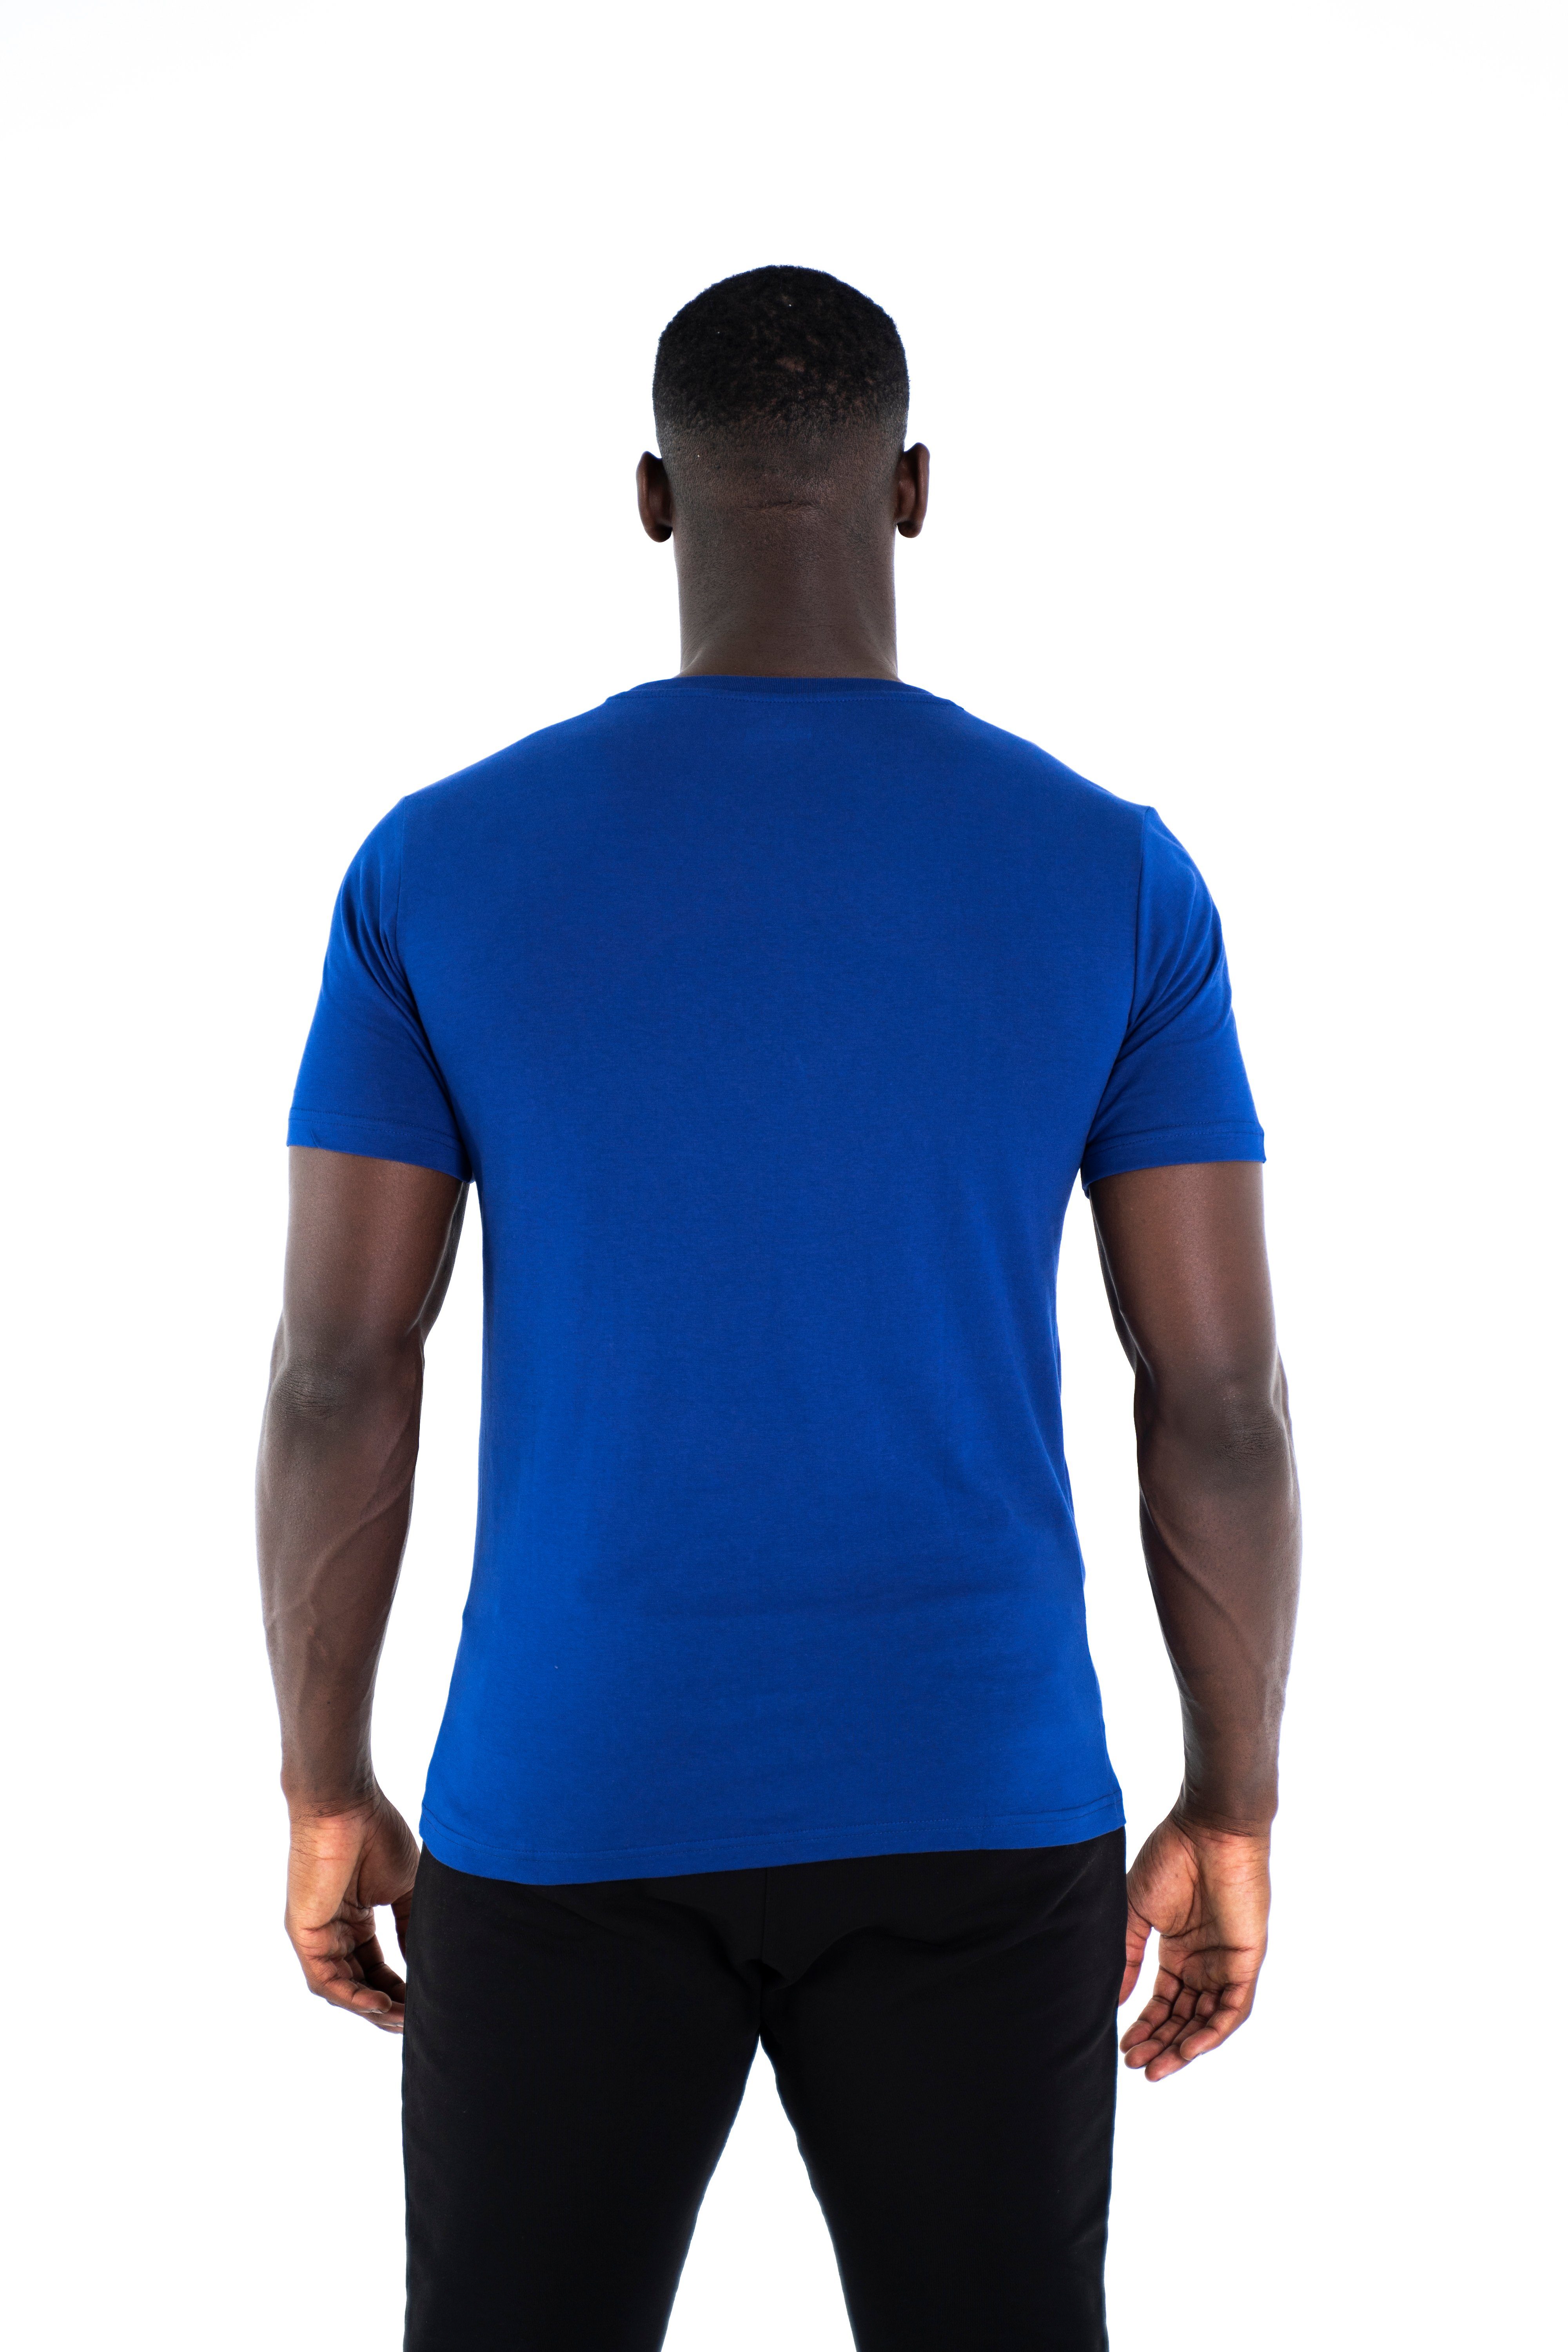 Cotton 100% Sportwear Shirt blau T-Shirt Modern Rundhalsausschnitt, Baumwoll Universum C-Neck